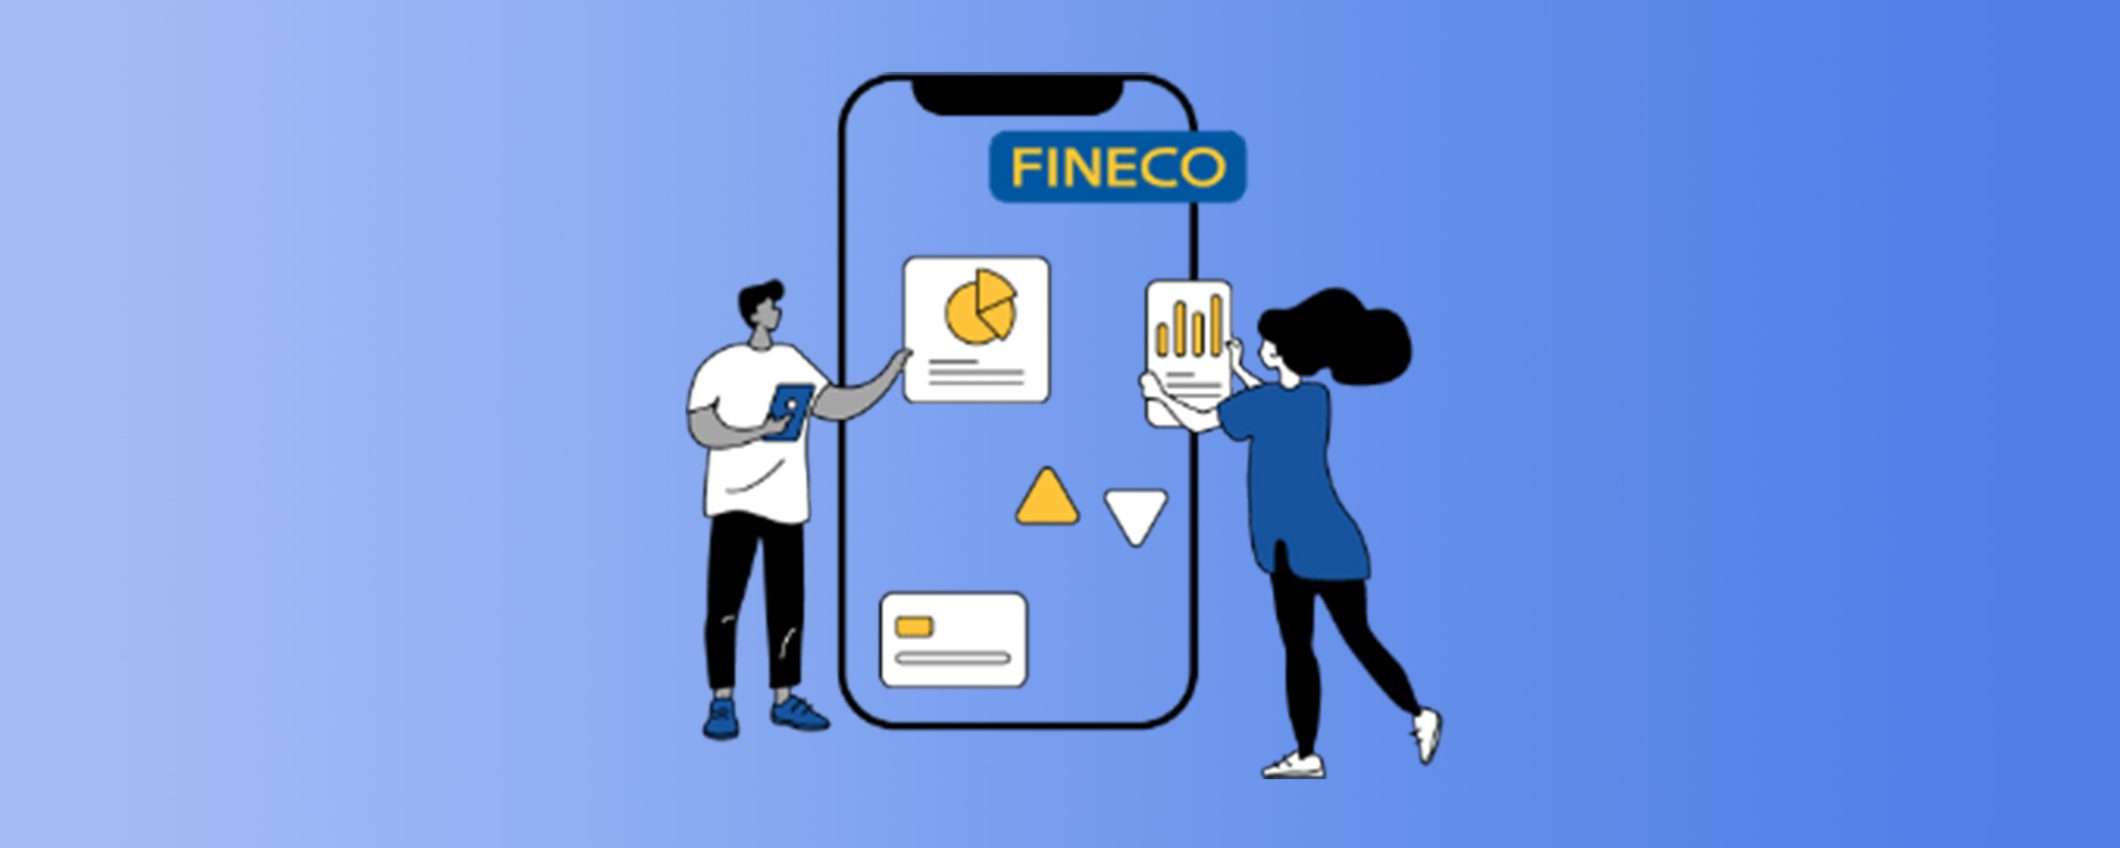 Canone zero per un anno: l'offerta Fineco Bank per i nuovi utenti